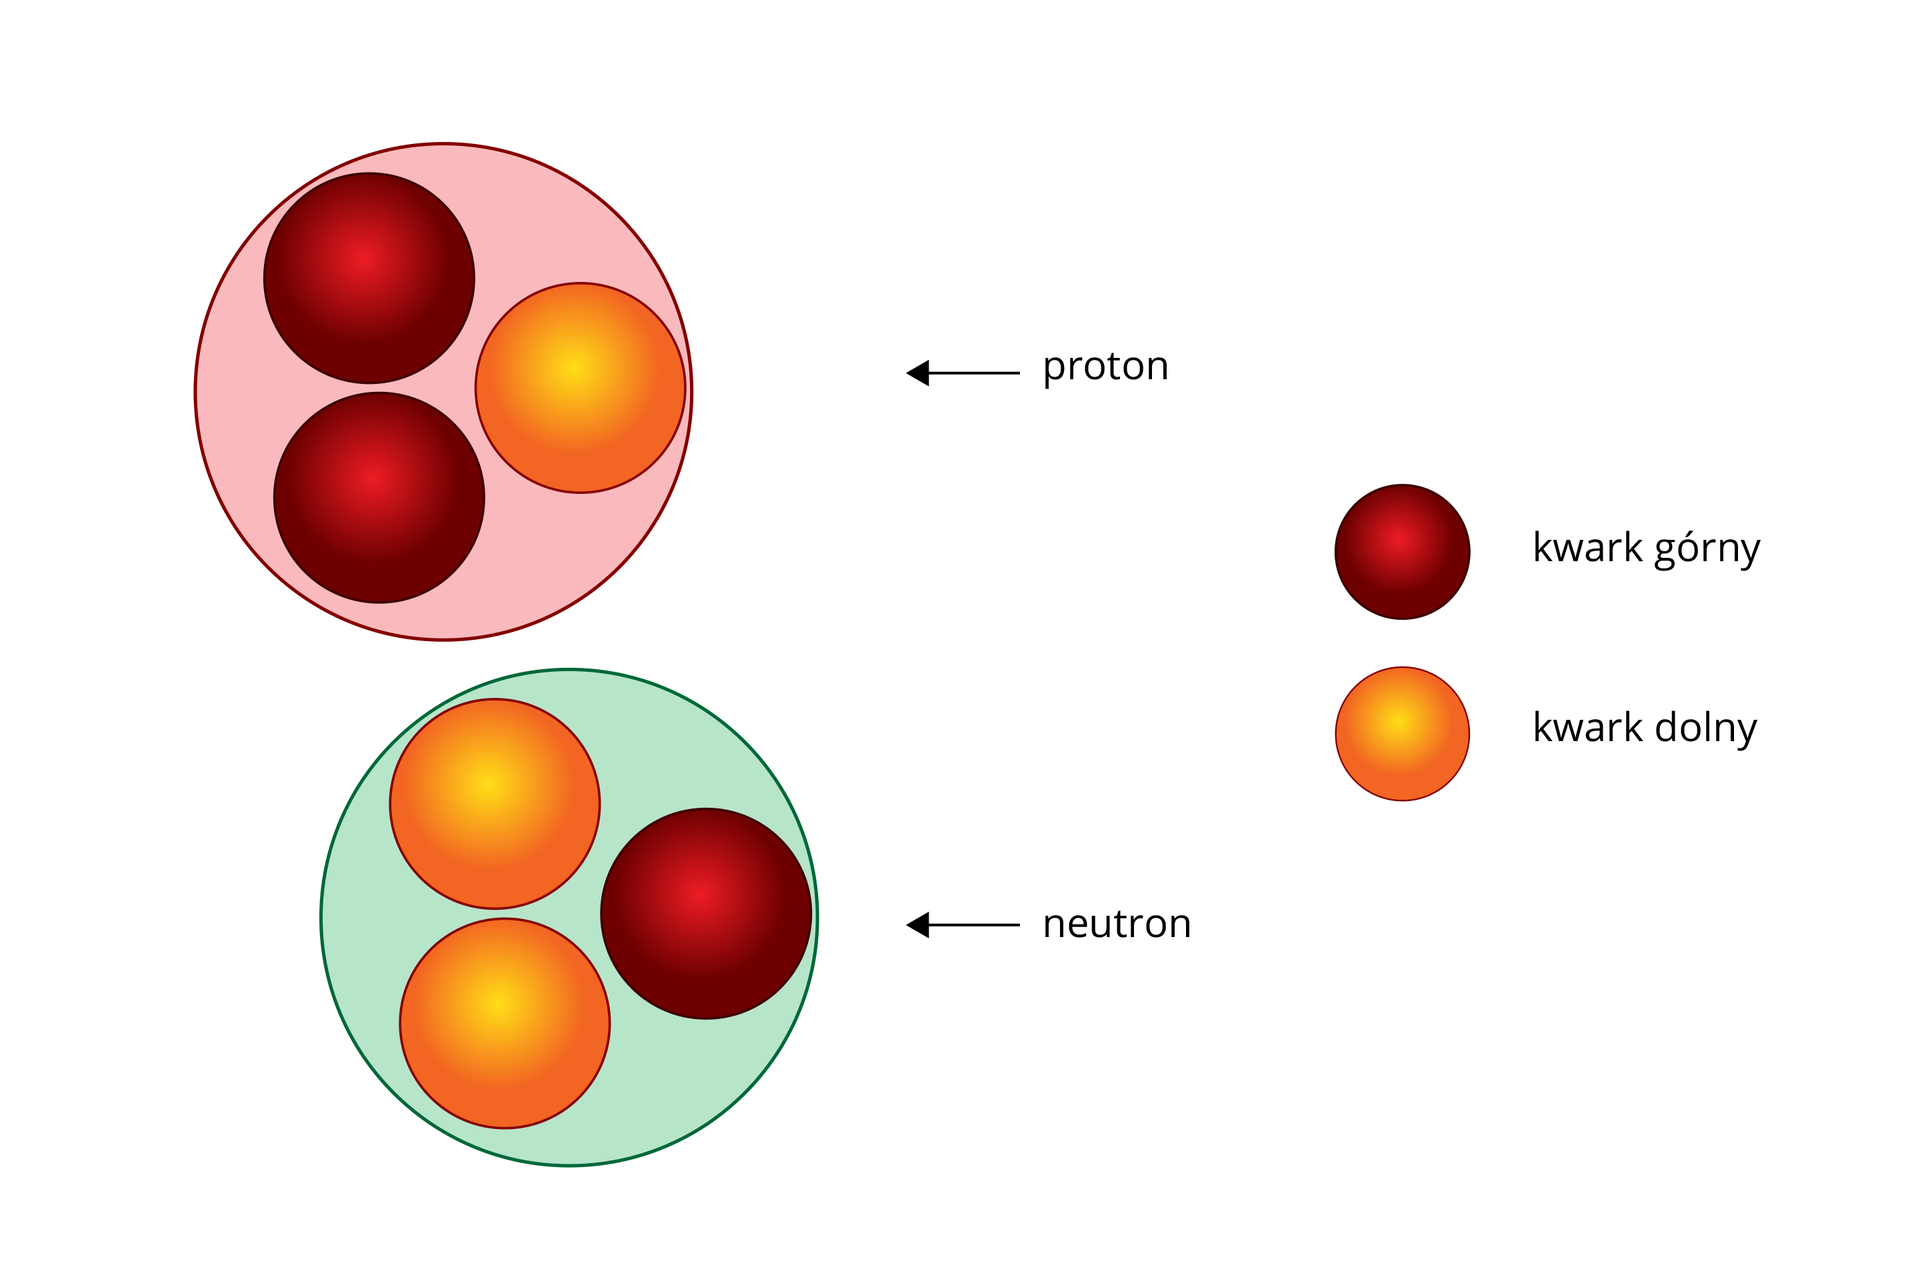 Schemat przedstawiający proton i neutron jako zbiór kwarków